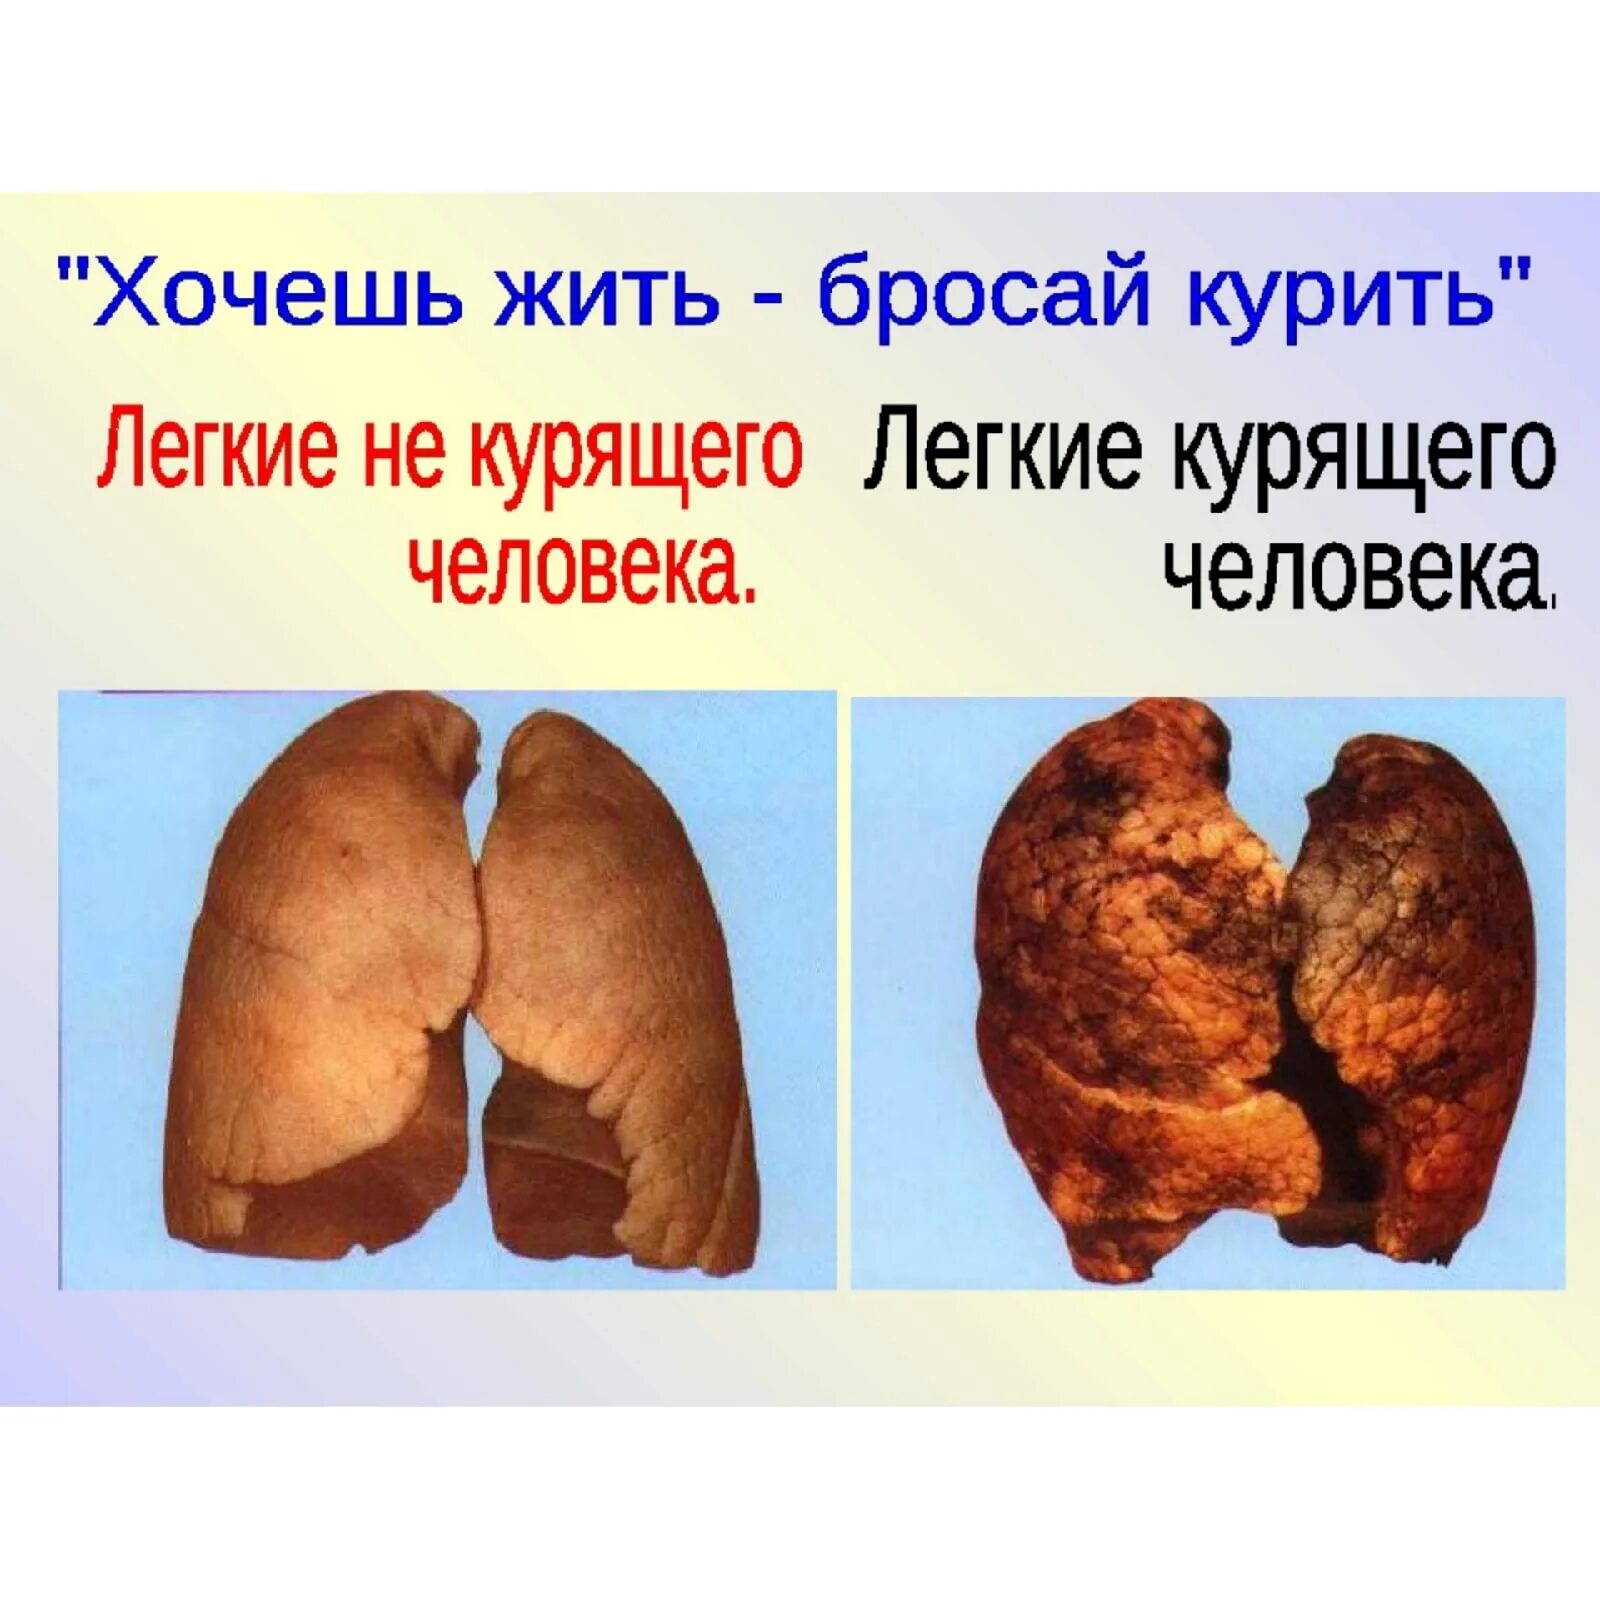 Курение вредно. Презентация о вреде курения.